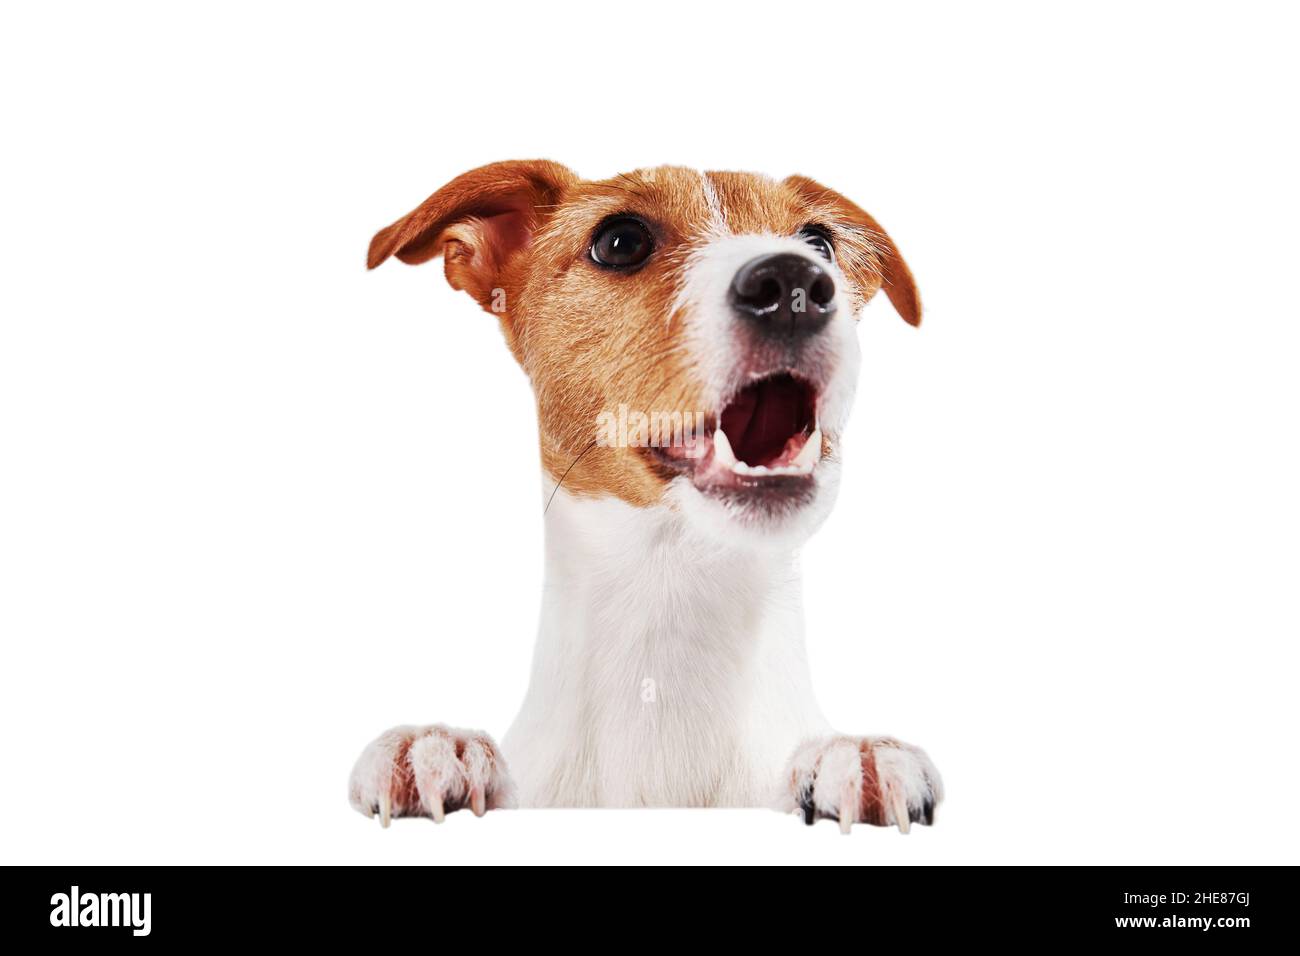 Portrait de chien isolé sur fond blanc.Tête de chien avec des pattes qui se labourent à l'appareil-photo avec la bouche ouverte, chien affamé de merlan pour manger Banque D'Images